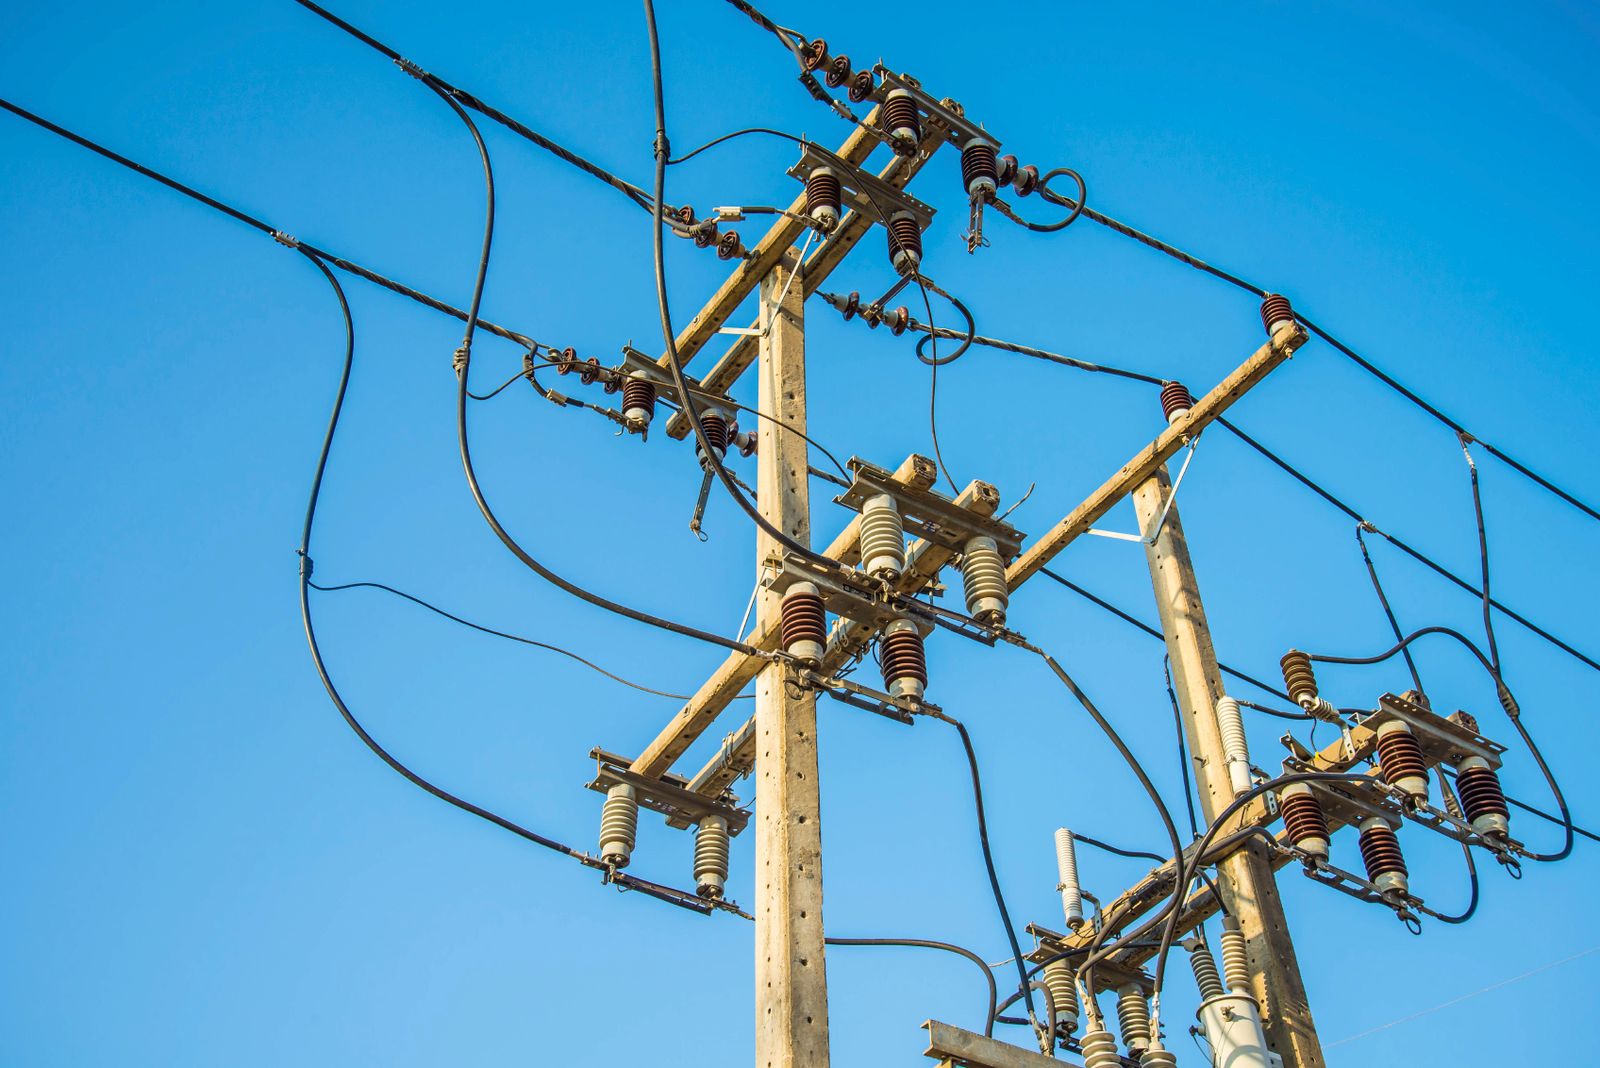 Decisiones sobre redes eléctricas rurales en Tolima